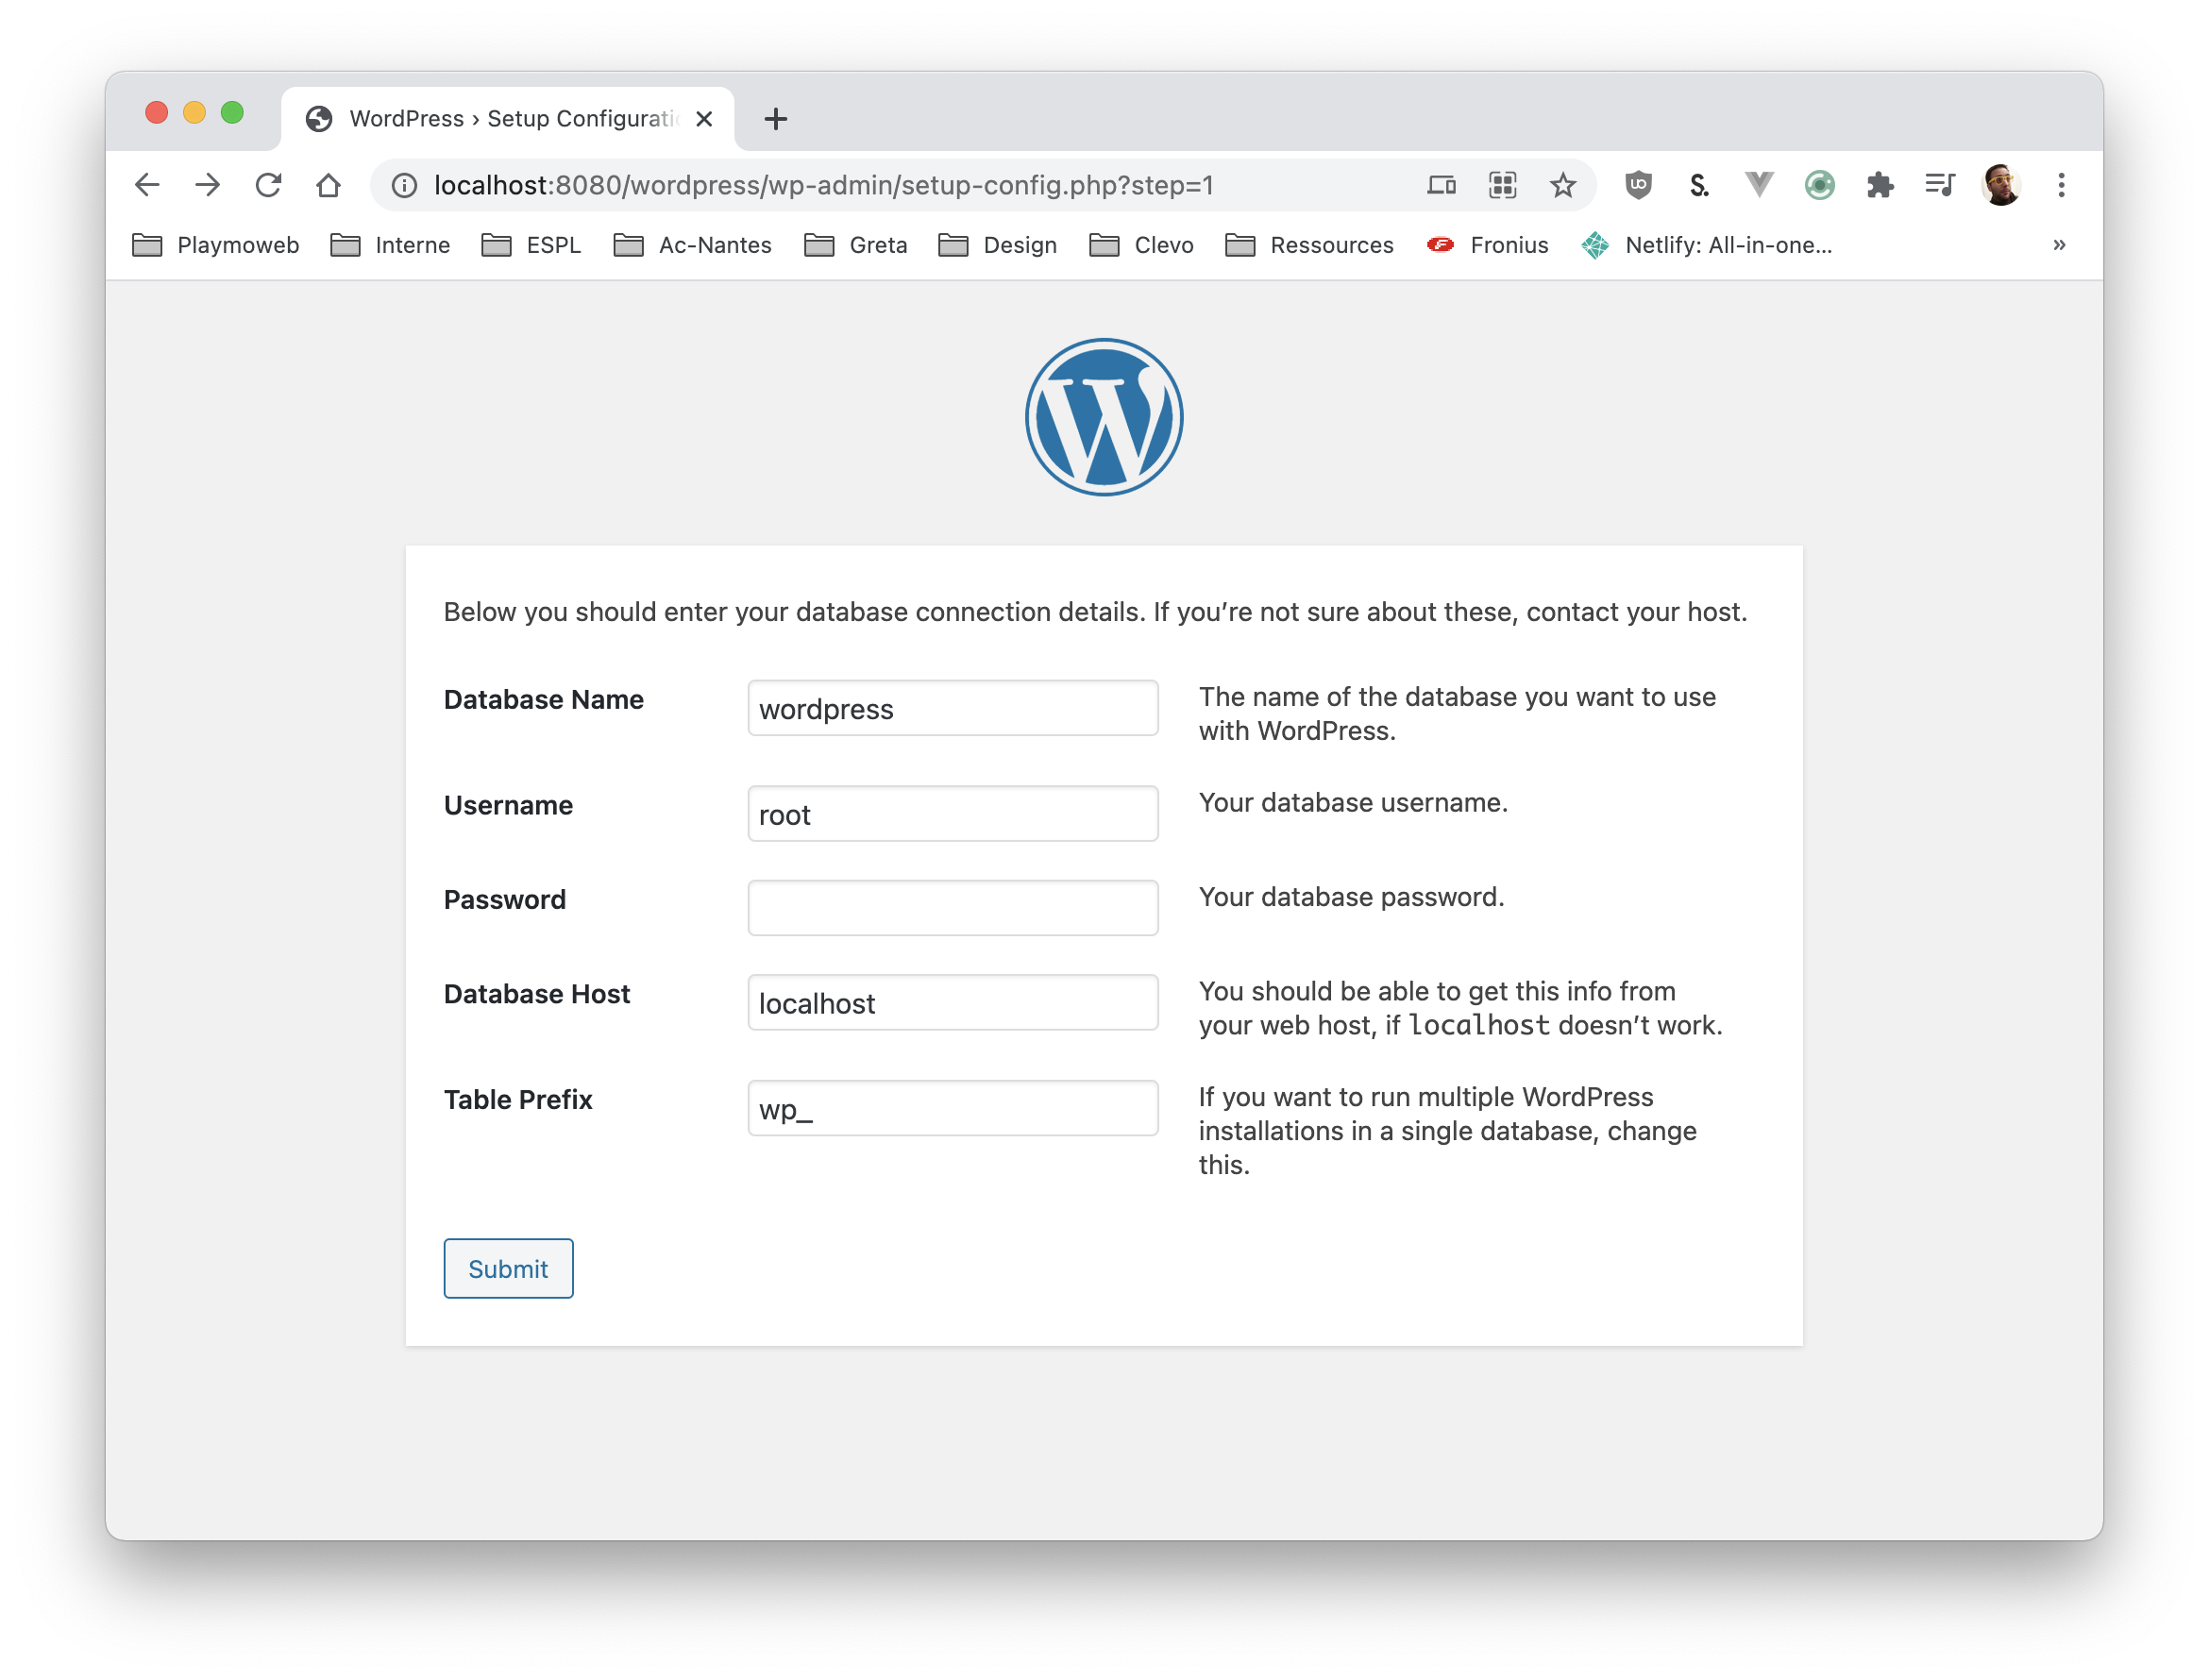 Base de données Wordpress